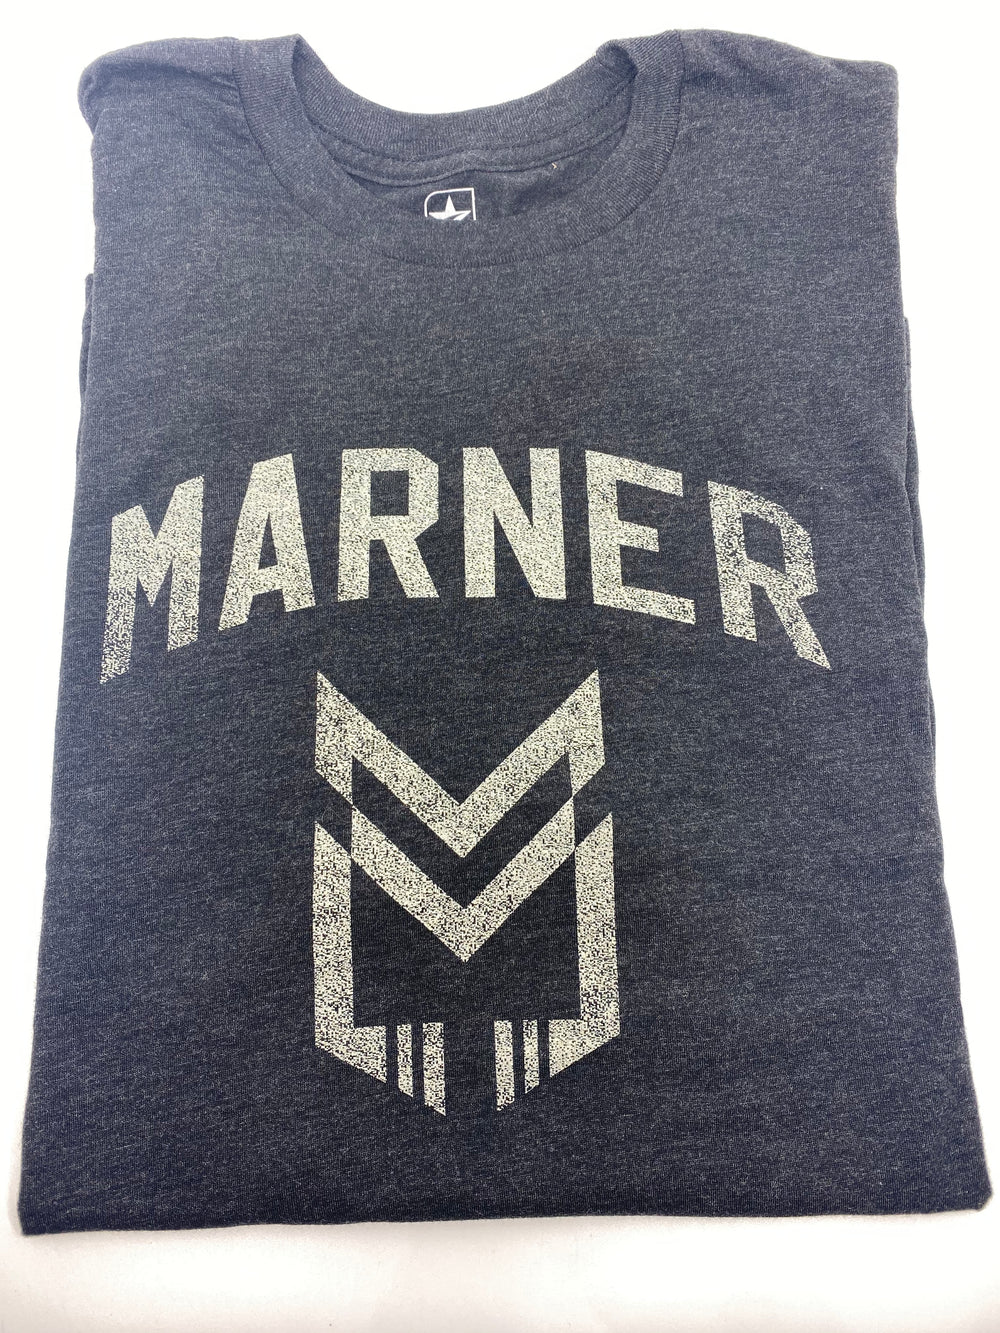 Marnner "MM" Black T Shirt